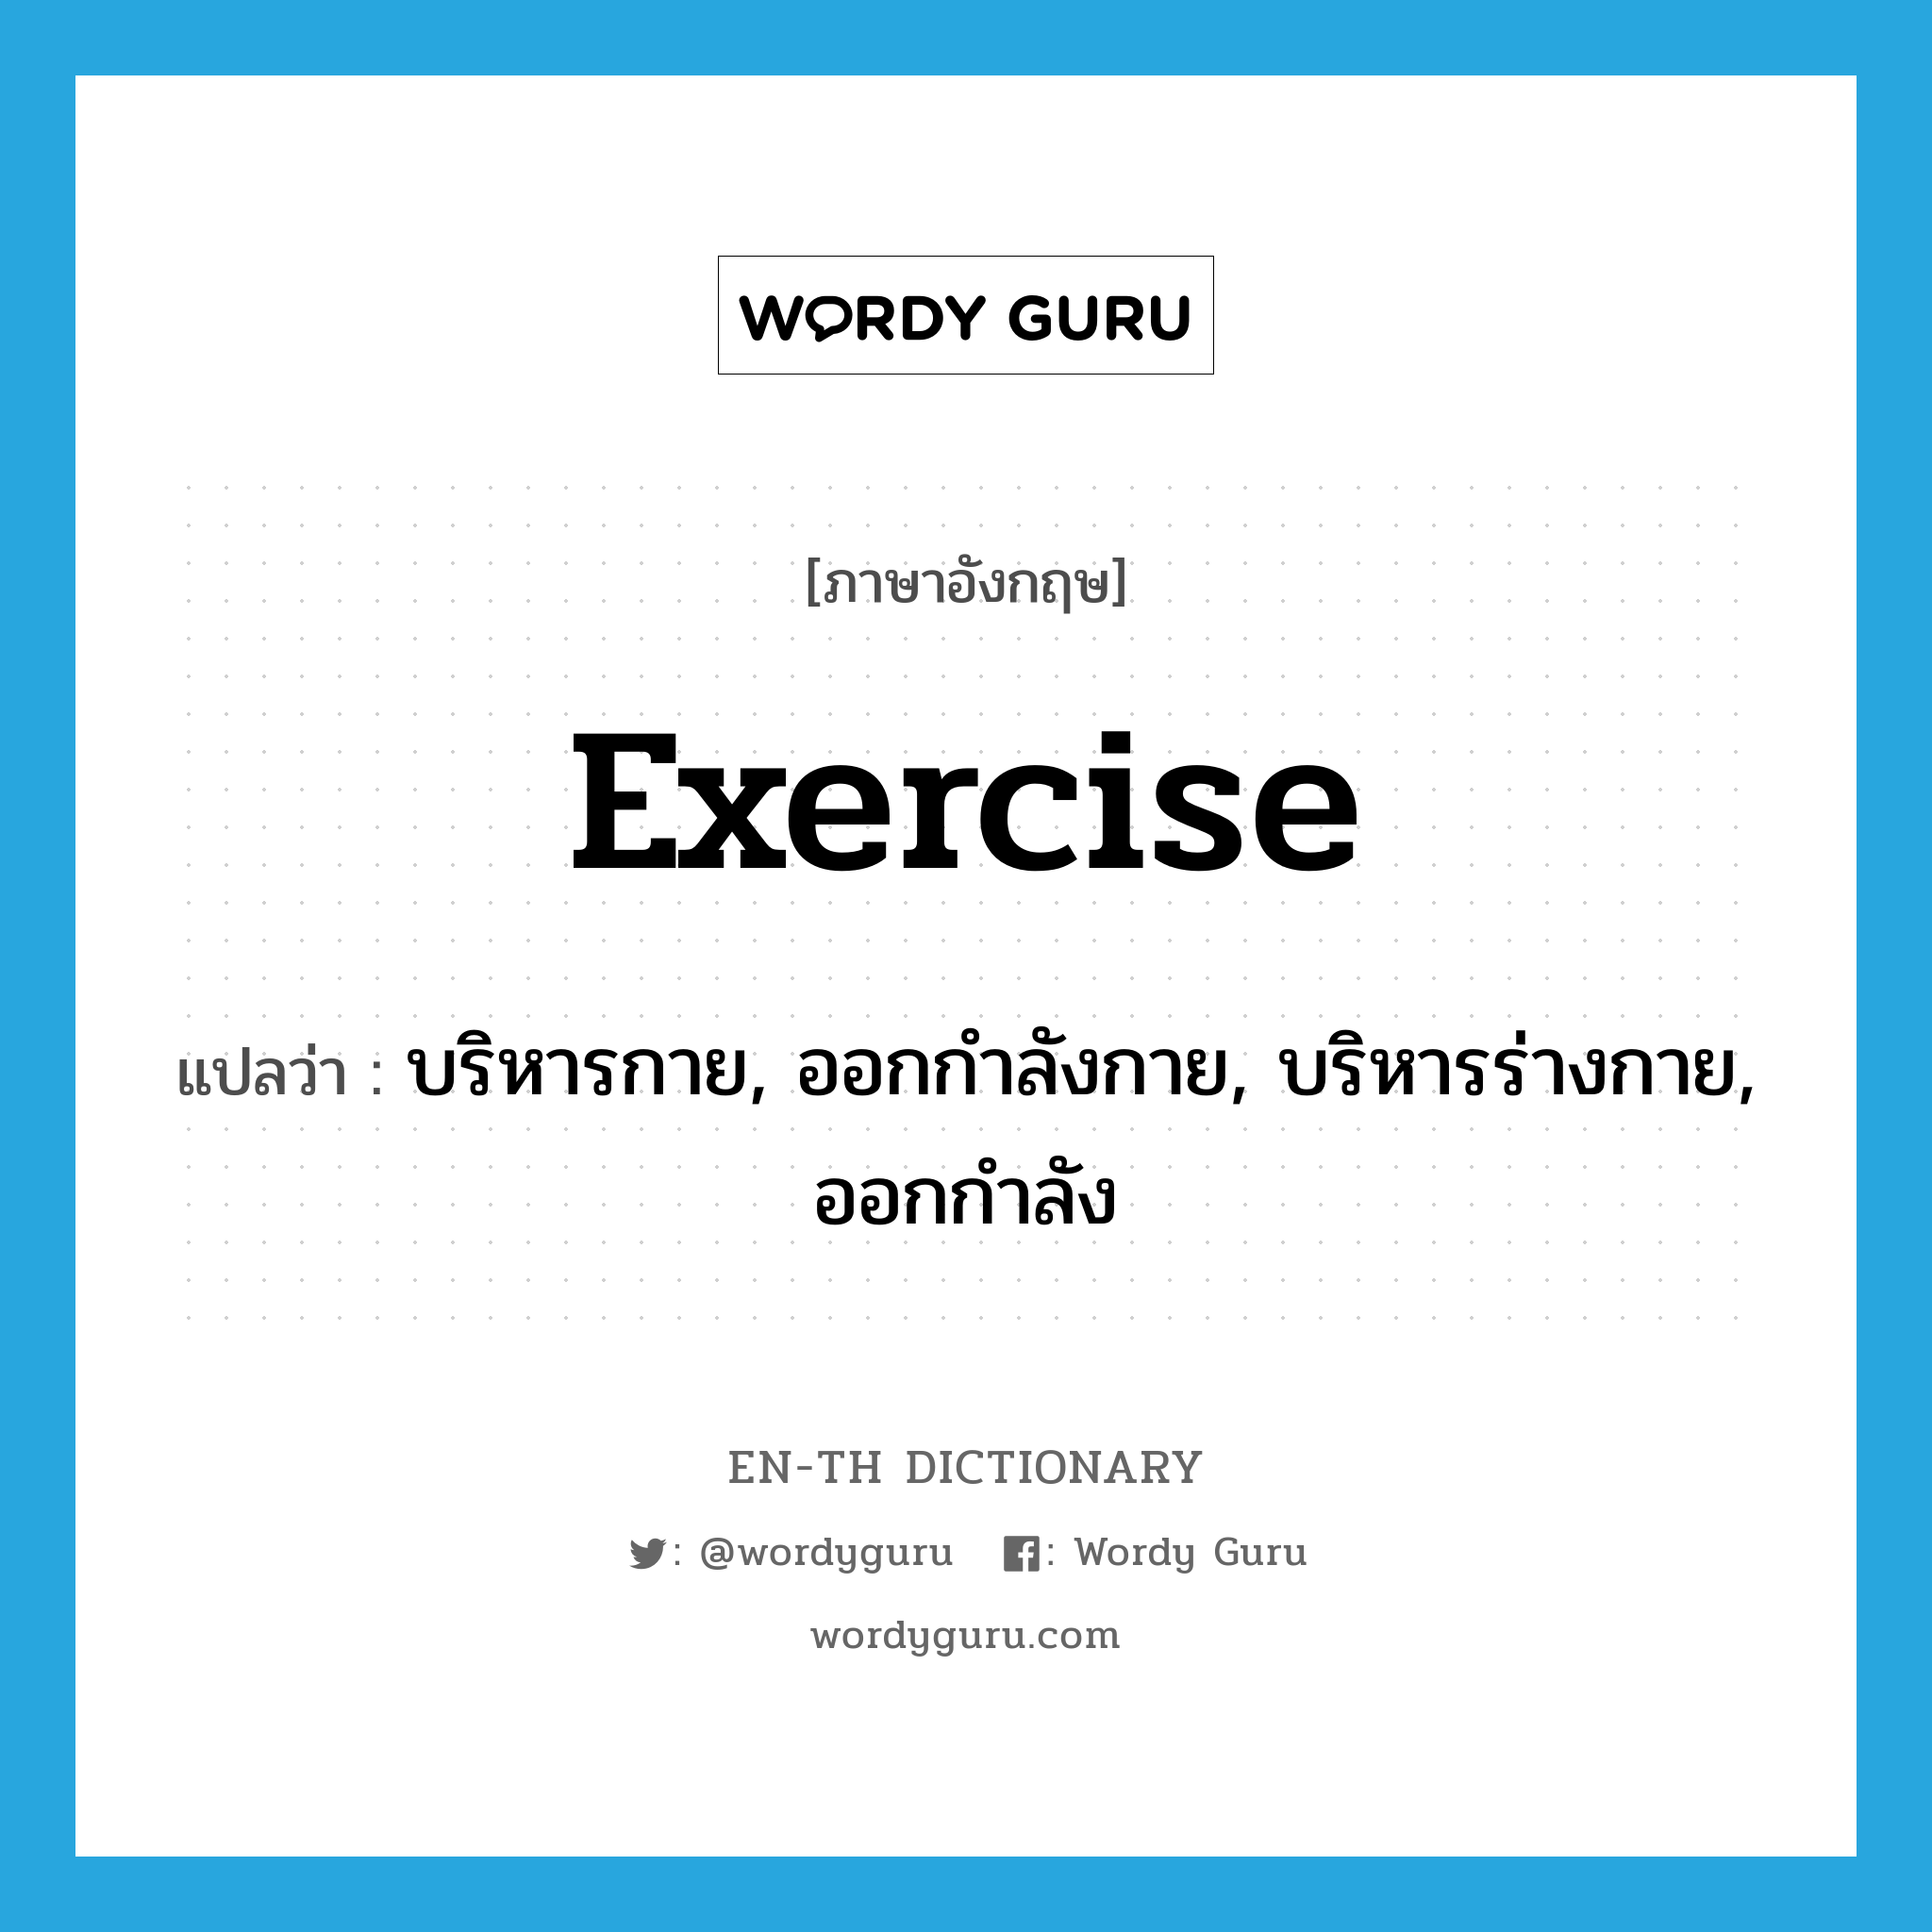 บริหารกาย, ออกกำลังกาย, บริหารร่างกาย, ออกกำลัง ภาษาอังกฤษ?, คำศัพท์ภาษาอังกฤษ บริหารกาย, ออกกำลังกาย, บริหารร่างกาย, ออกกำลัง แปลว่า exercise ประเภท VI หมวด VI